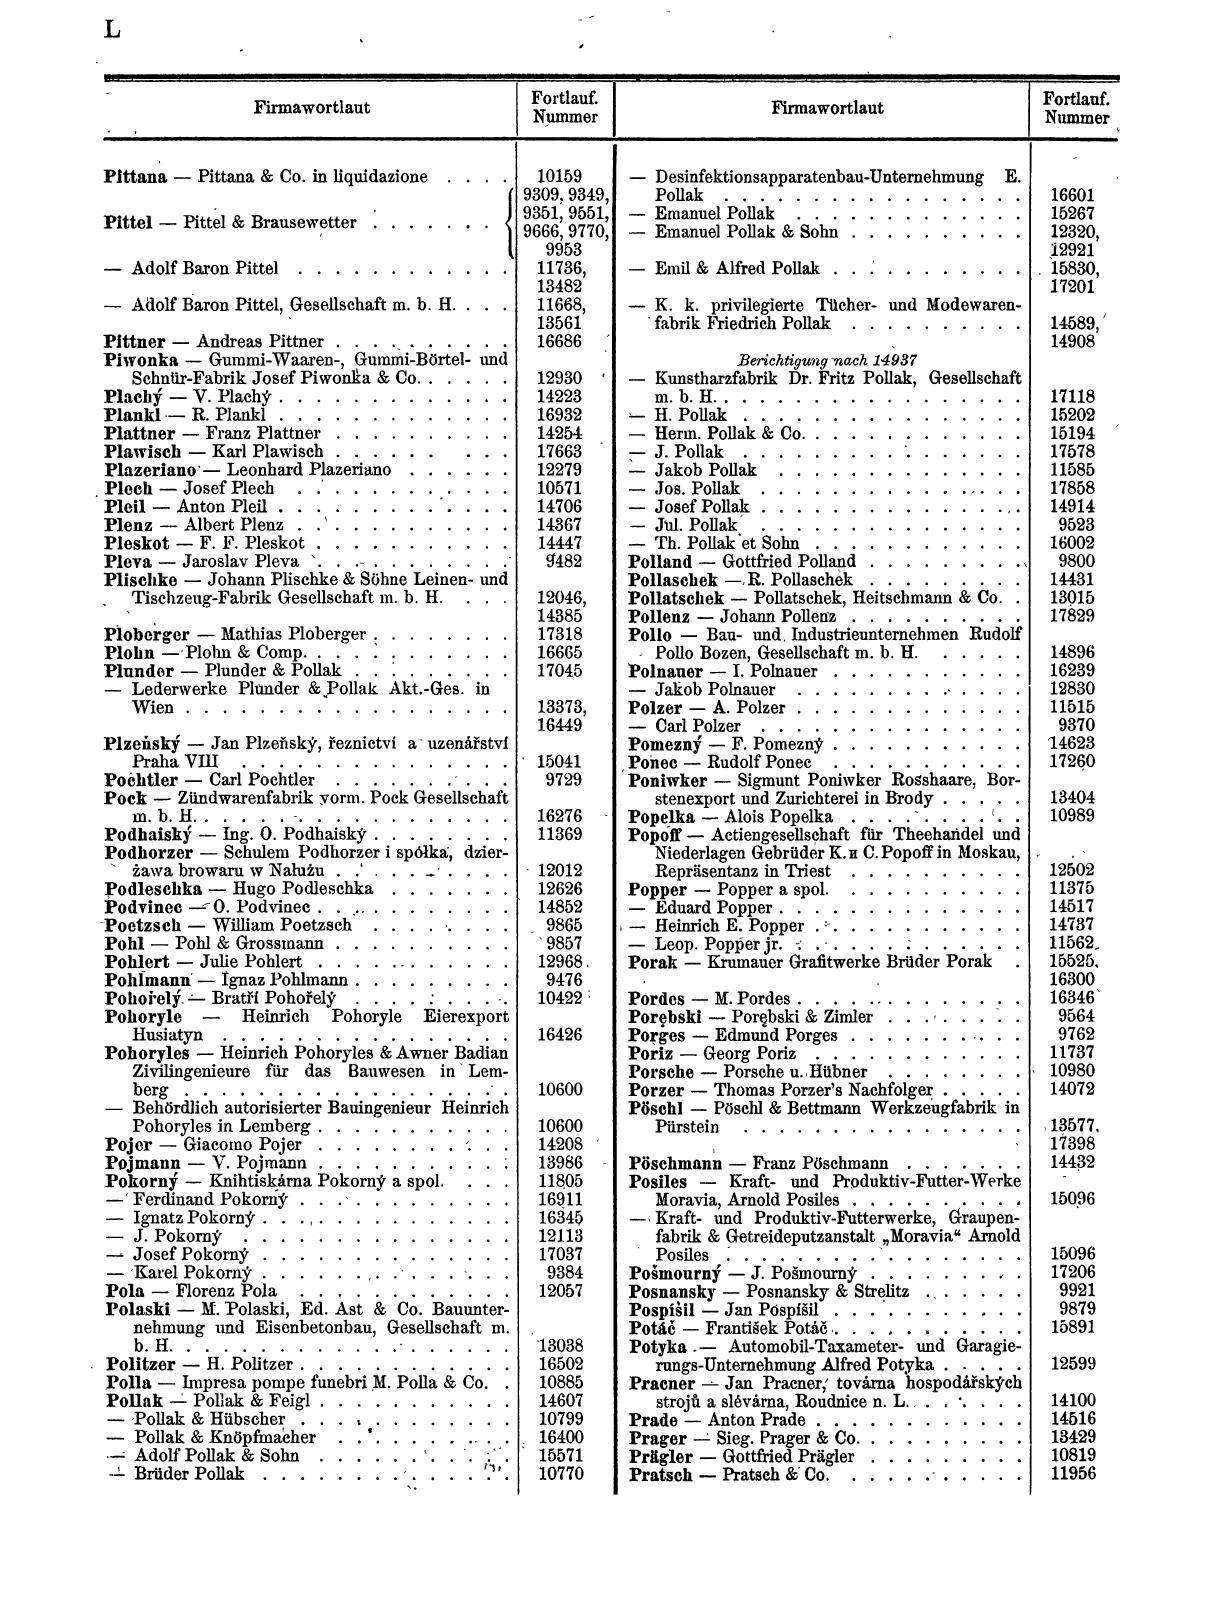 Zentralblatt für die Eintragungen in das Handelsregister 1913, Teil 2 - Seite 54